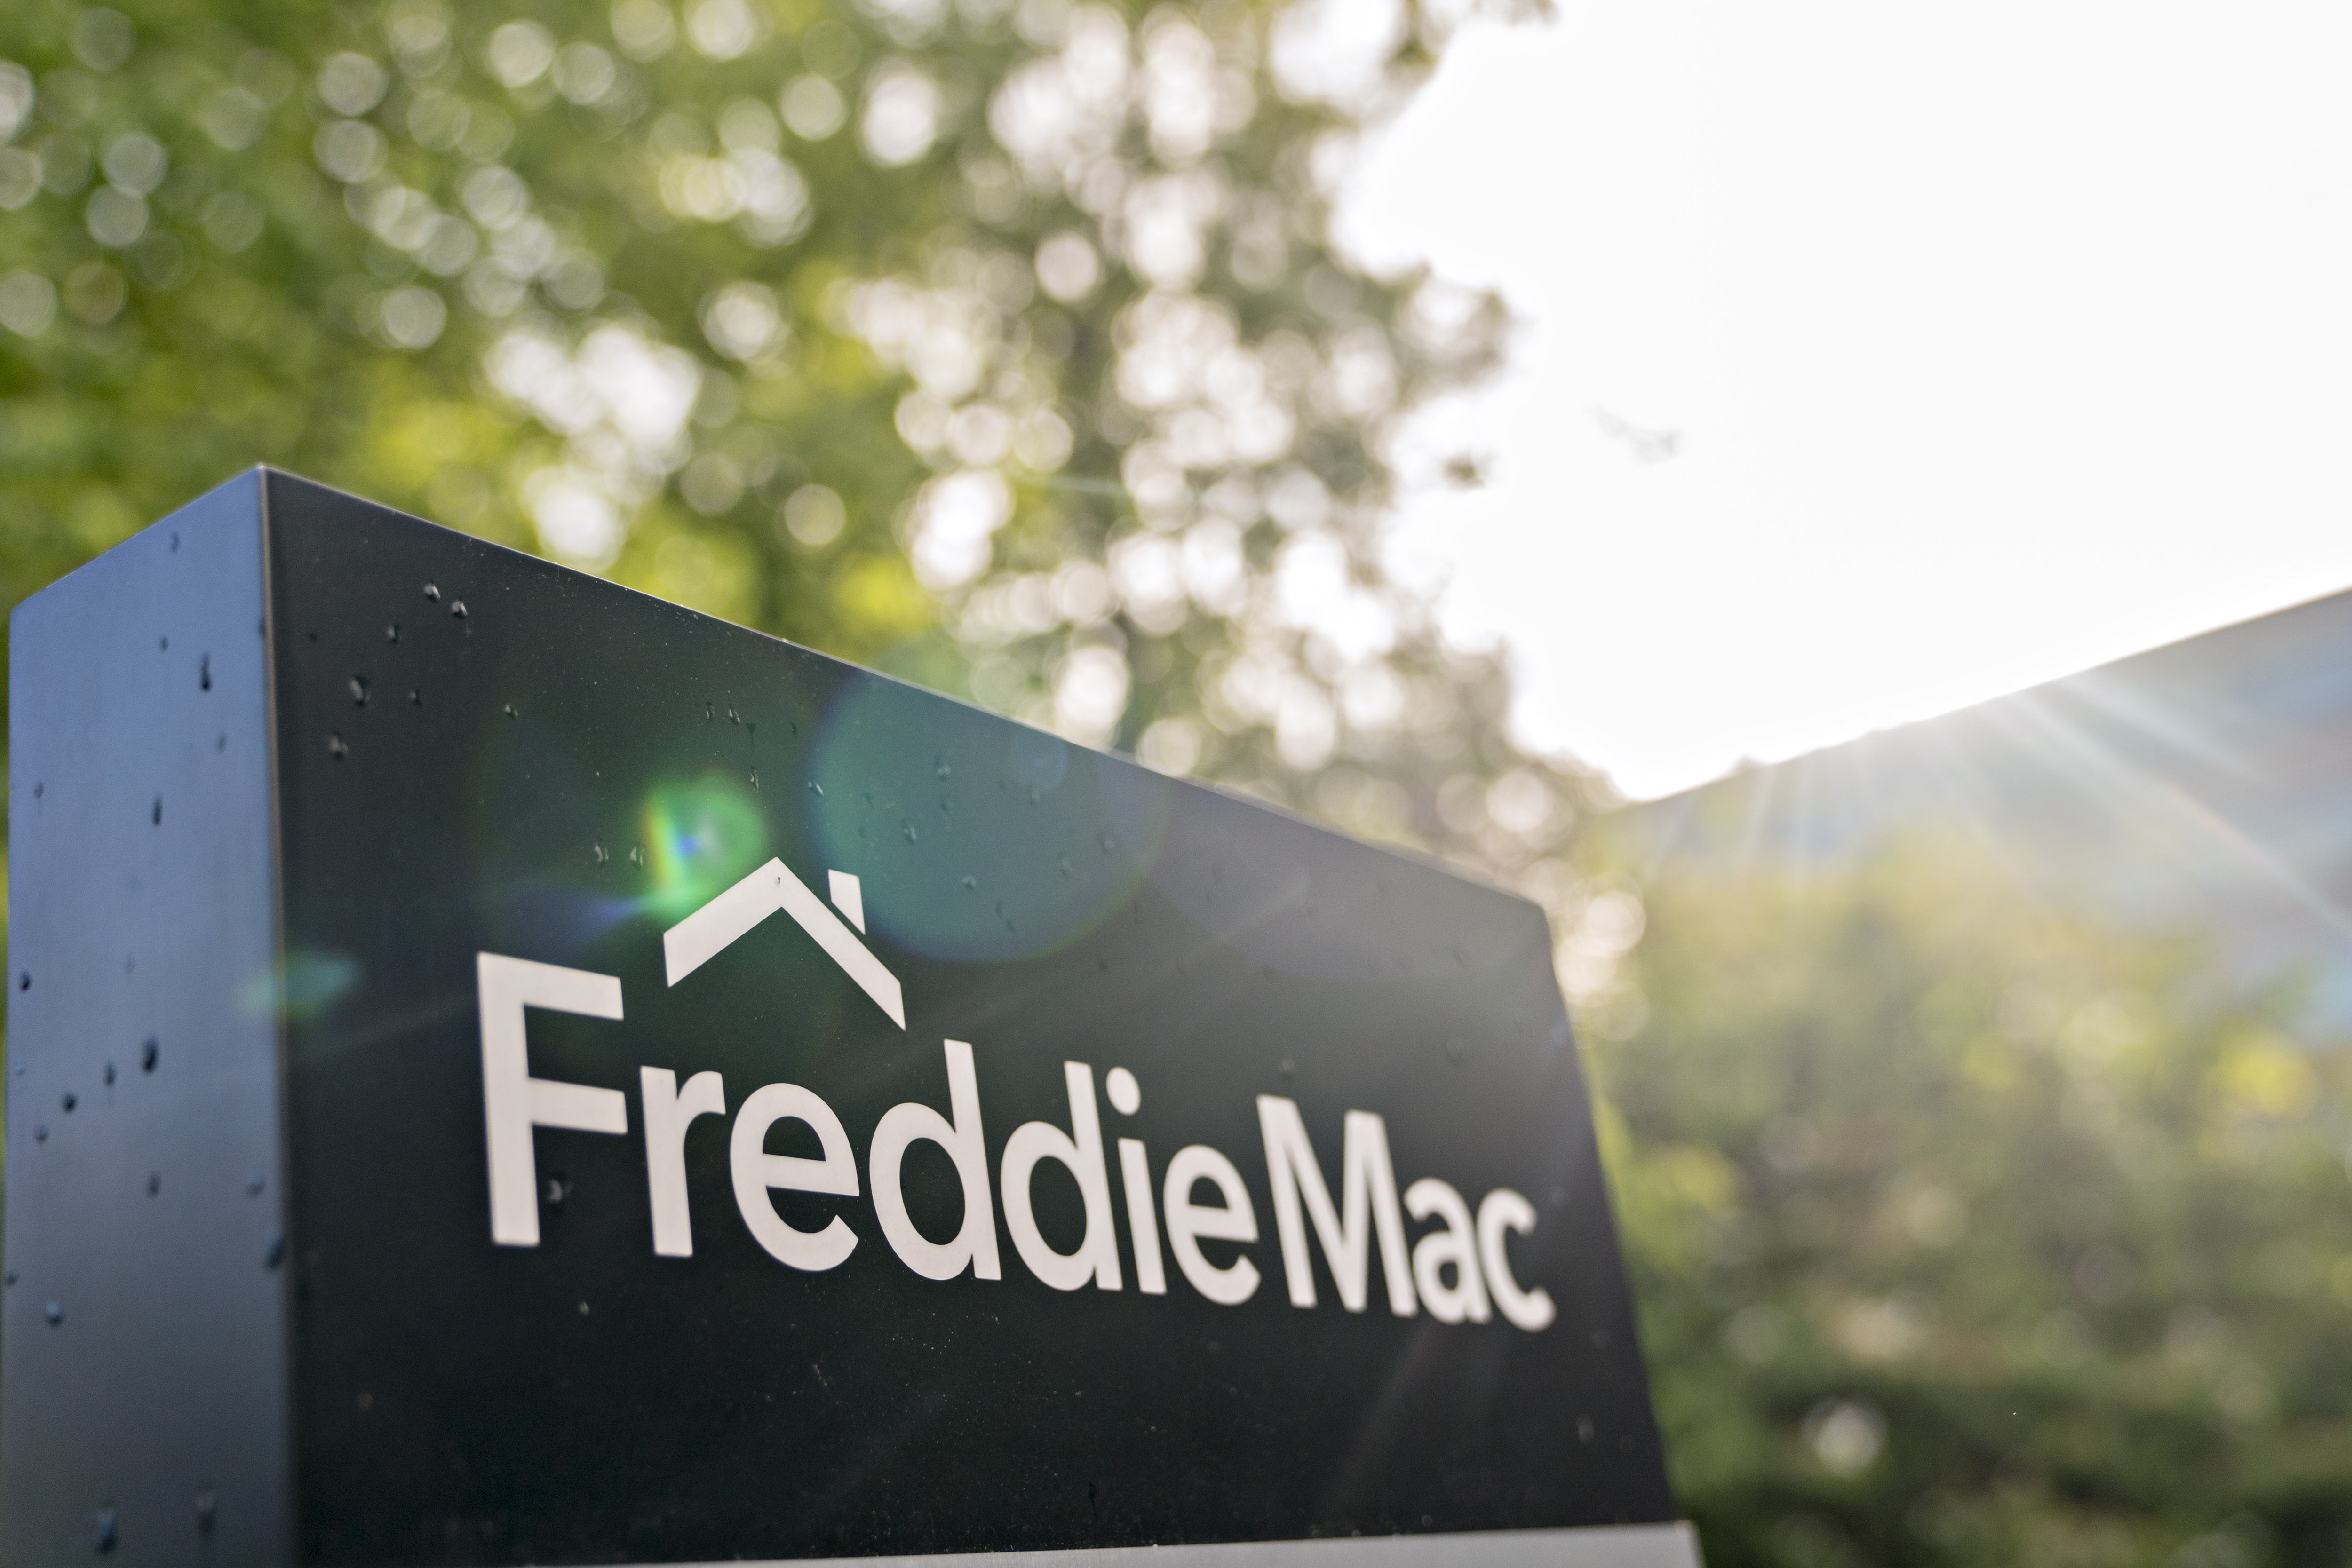 The Freddie Mac headquarters in McLean, Virginia